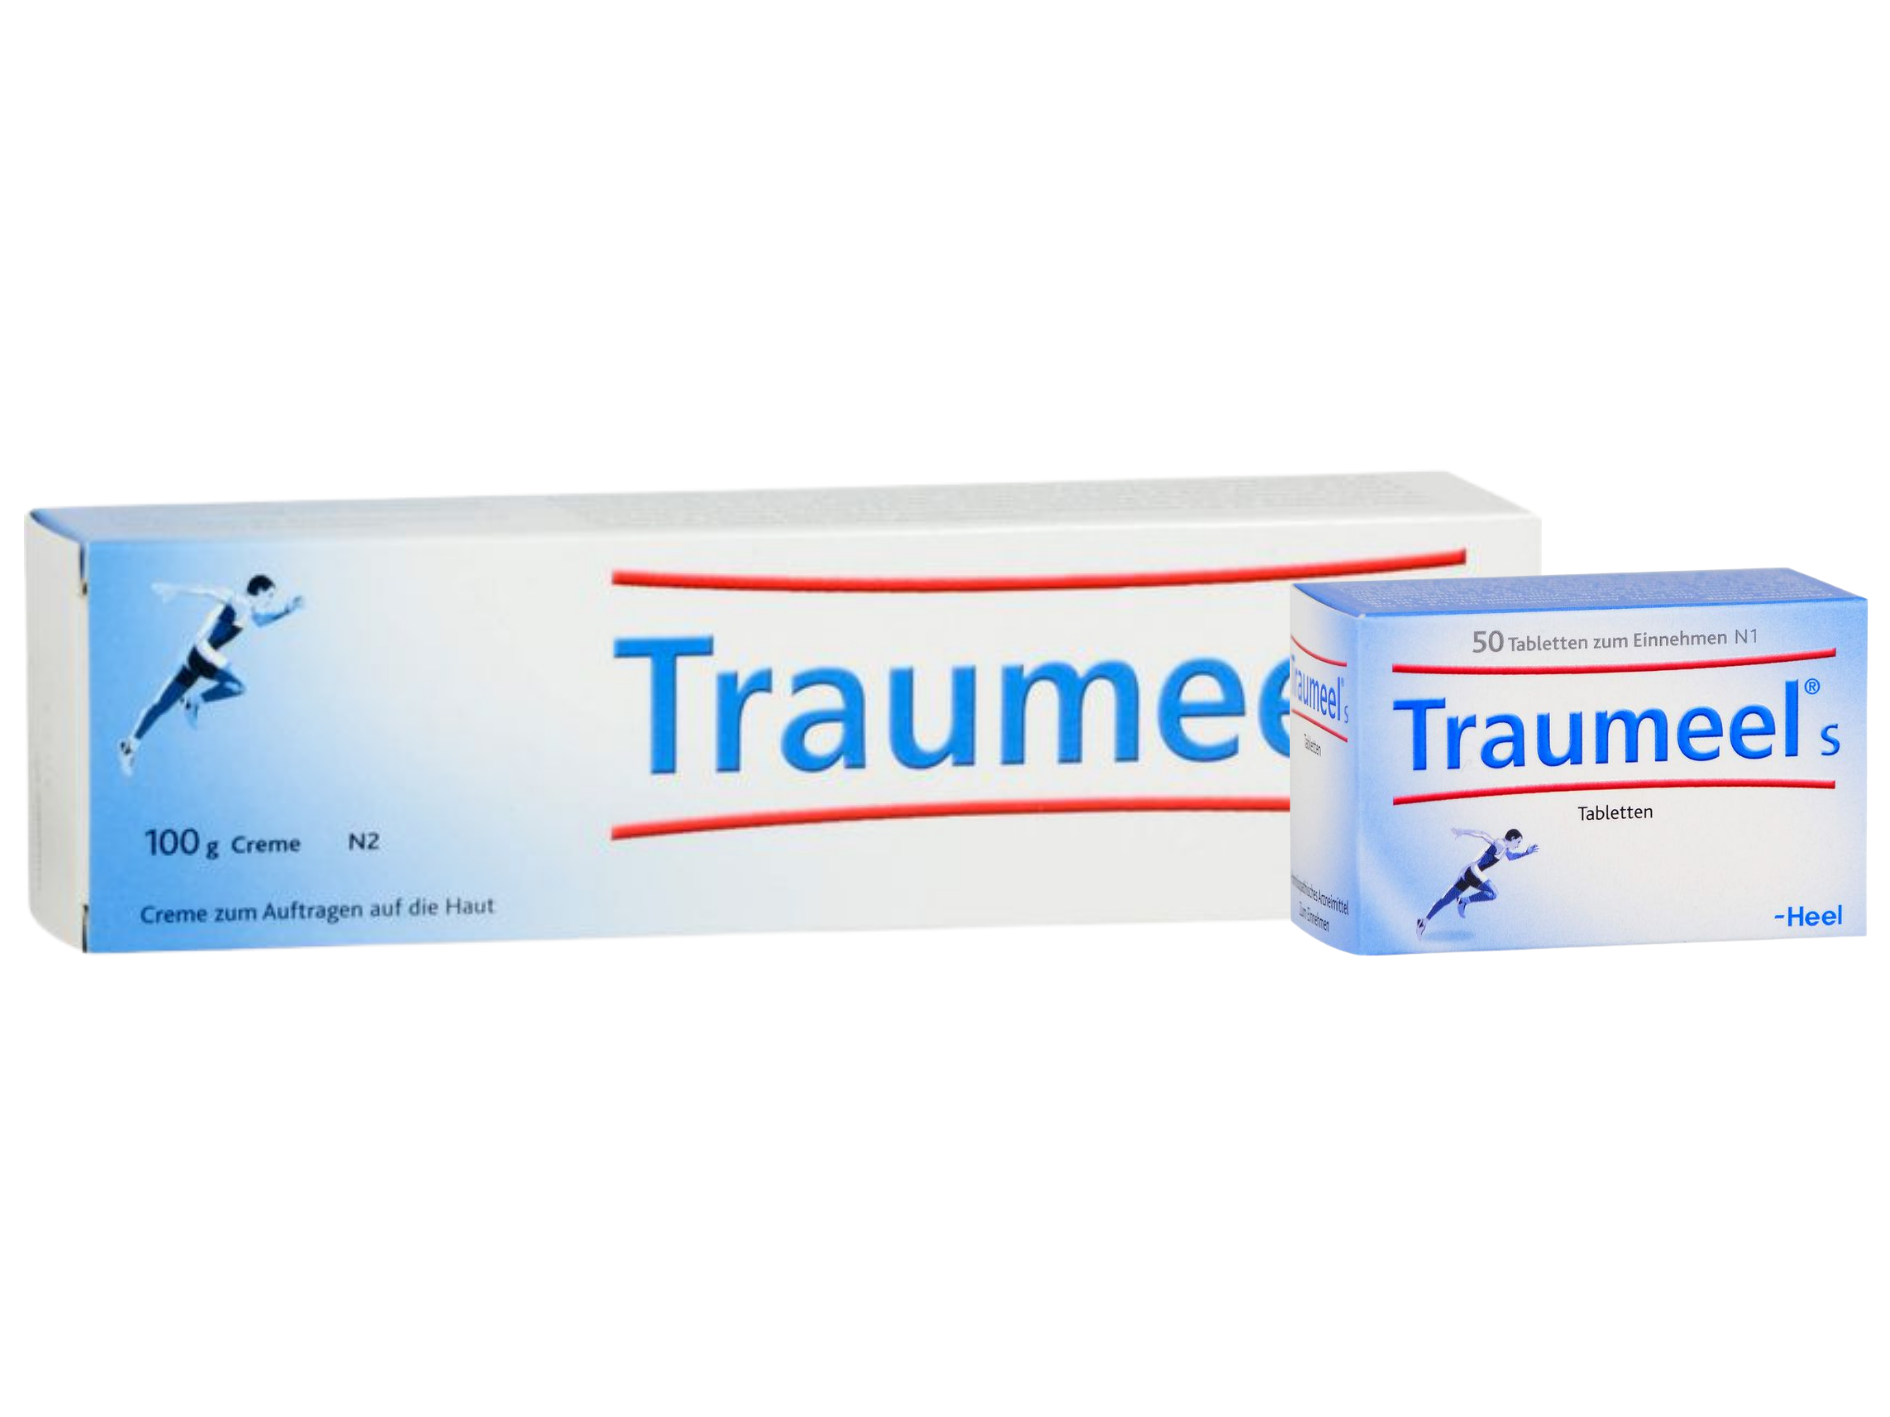 Sparset Schmerzbehandlung - TRAUMEEL S Tabletten 50 St + TRAUMEEL S Creme 100 g